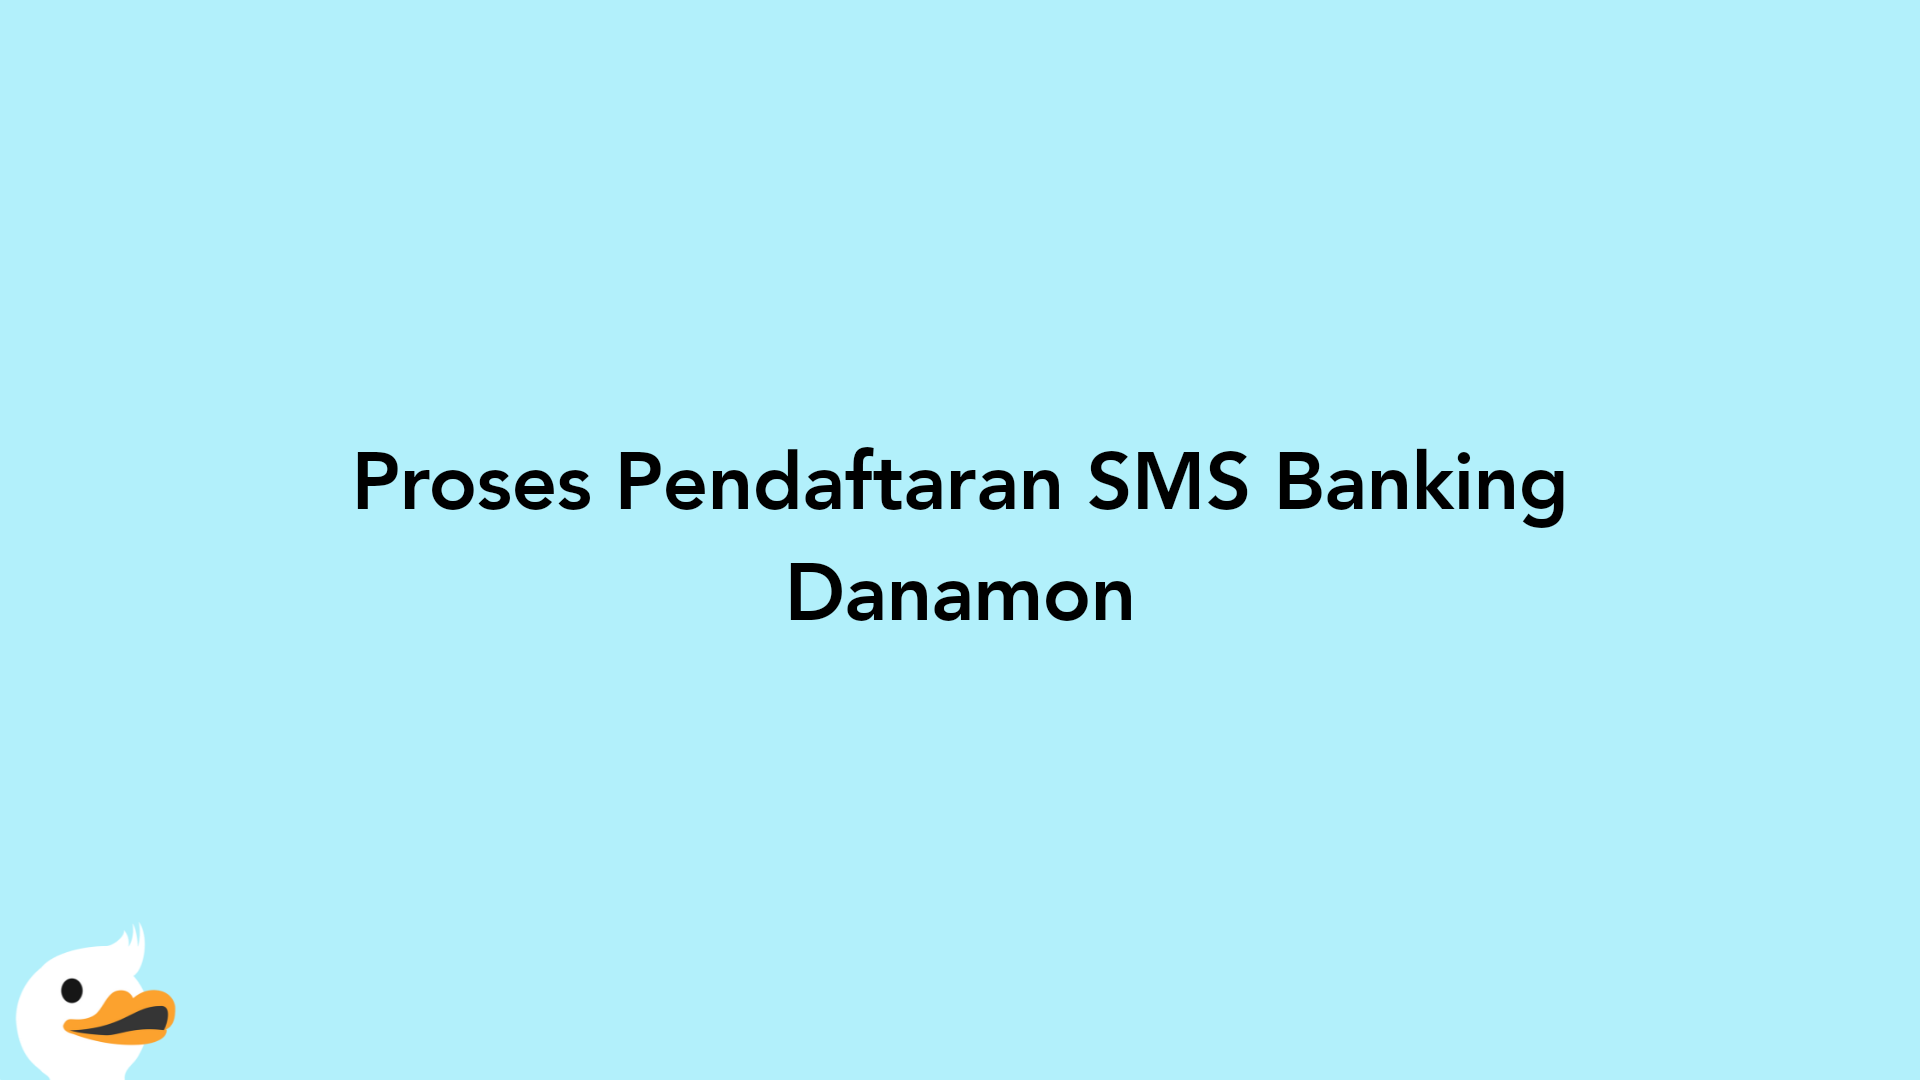 Proses Pendaftaran SMS Banking Danamon